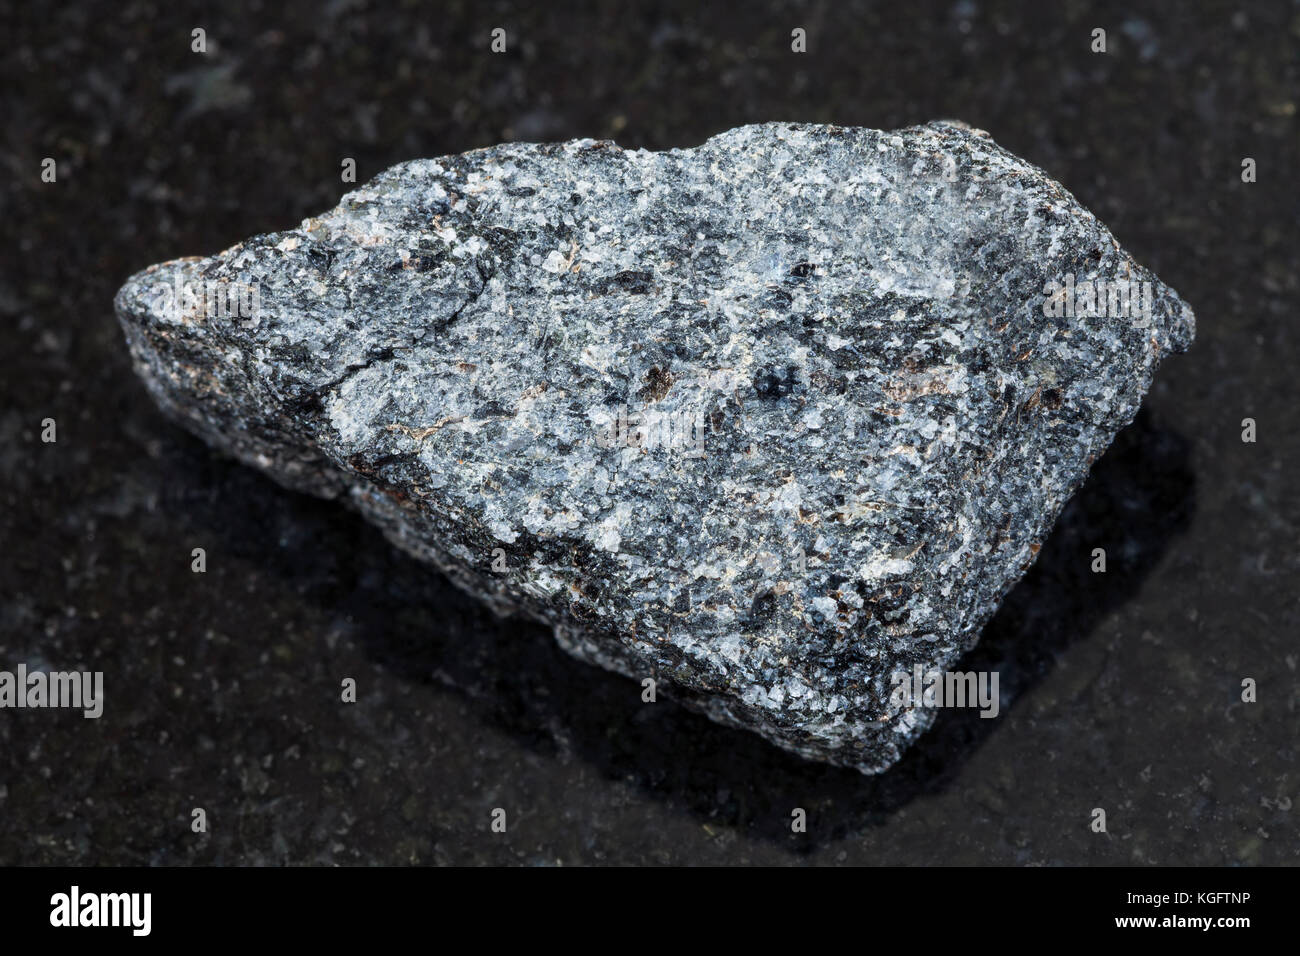 Makroaufnahmen von natürlichen Mineralgestein Muster - Rohstoffe nephelinsyenit Stein auf dunklem Granit Hintergrund Stockfoto